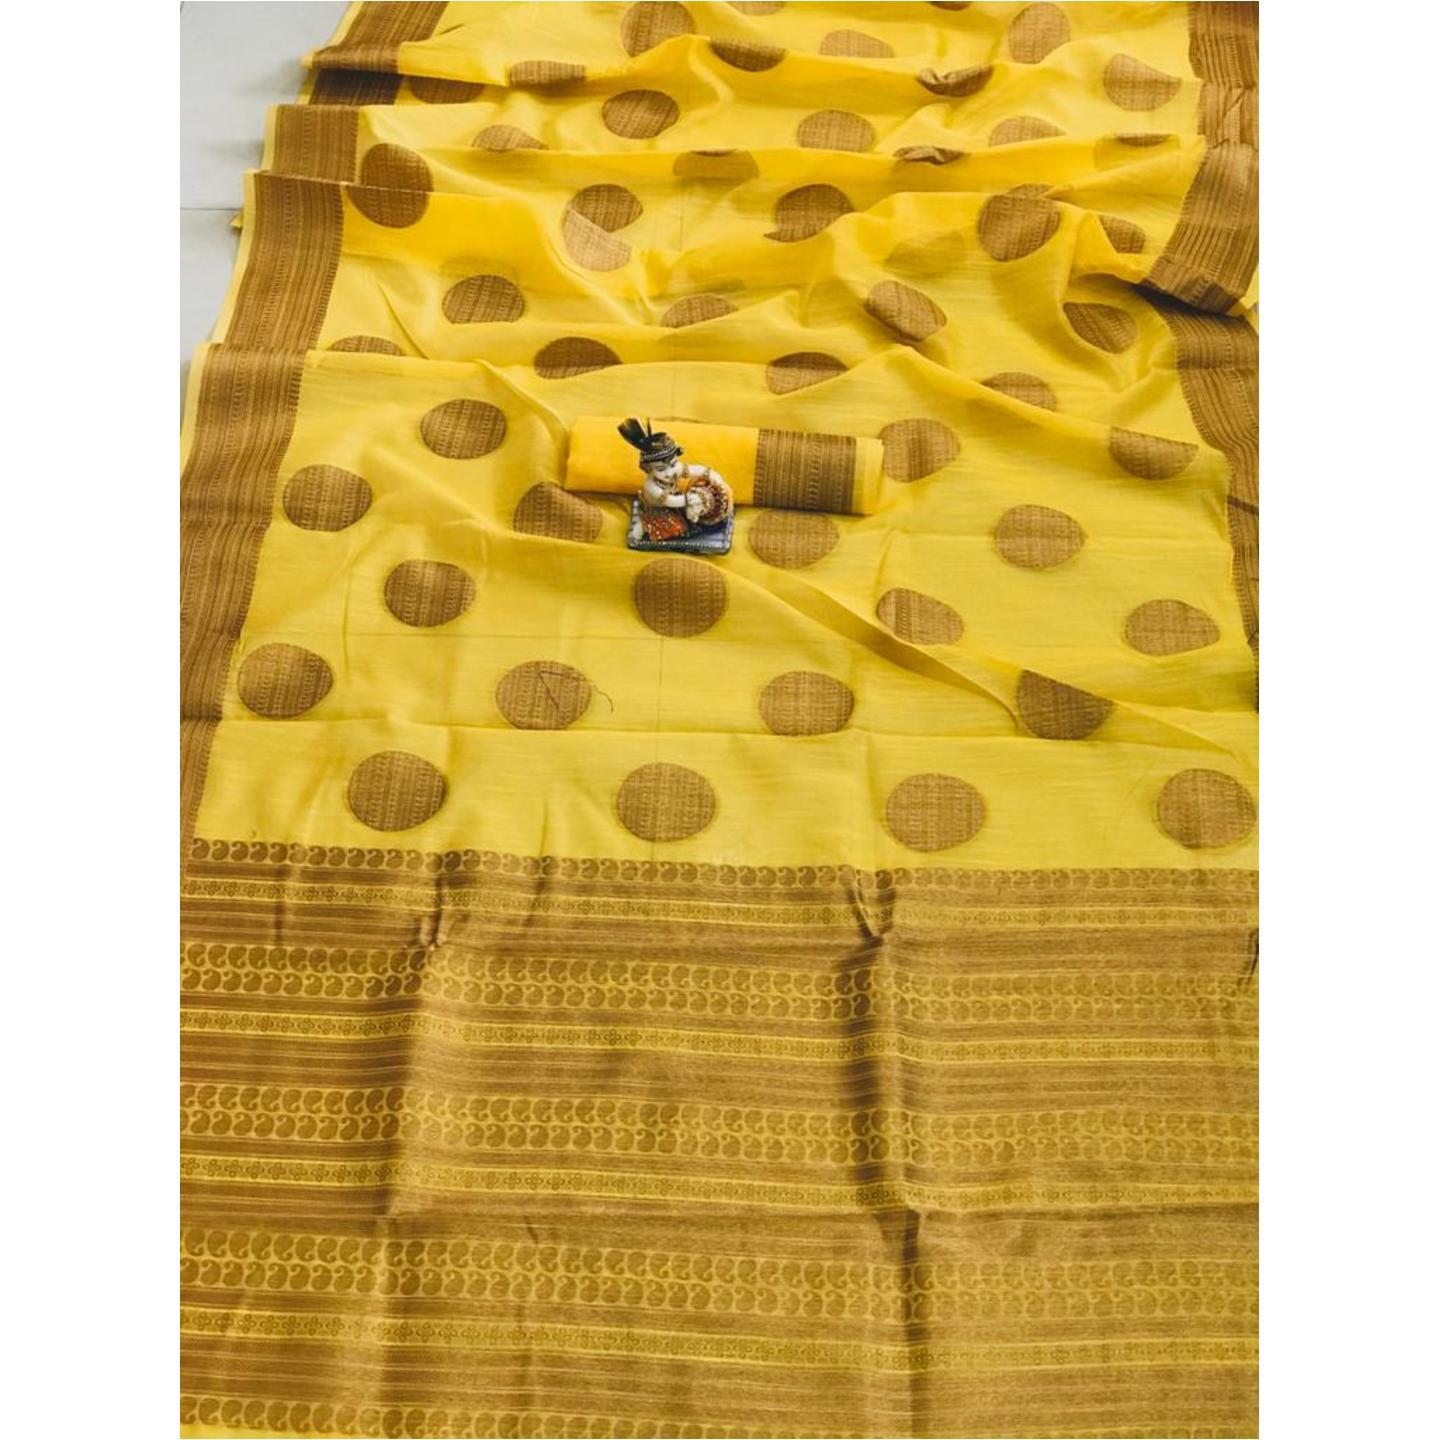 DSLC03 - Soft Linen Cotton weave Saree